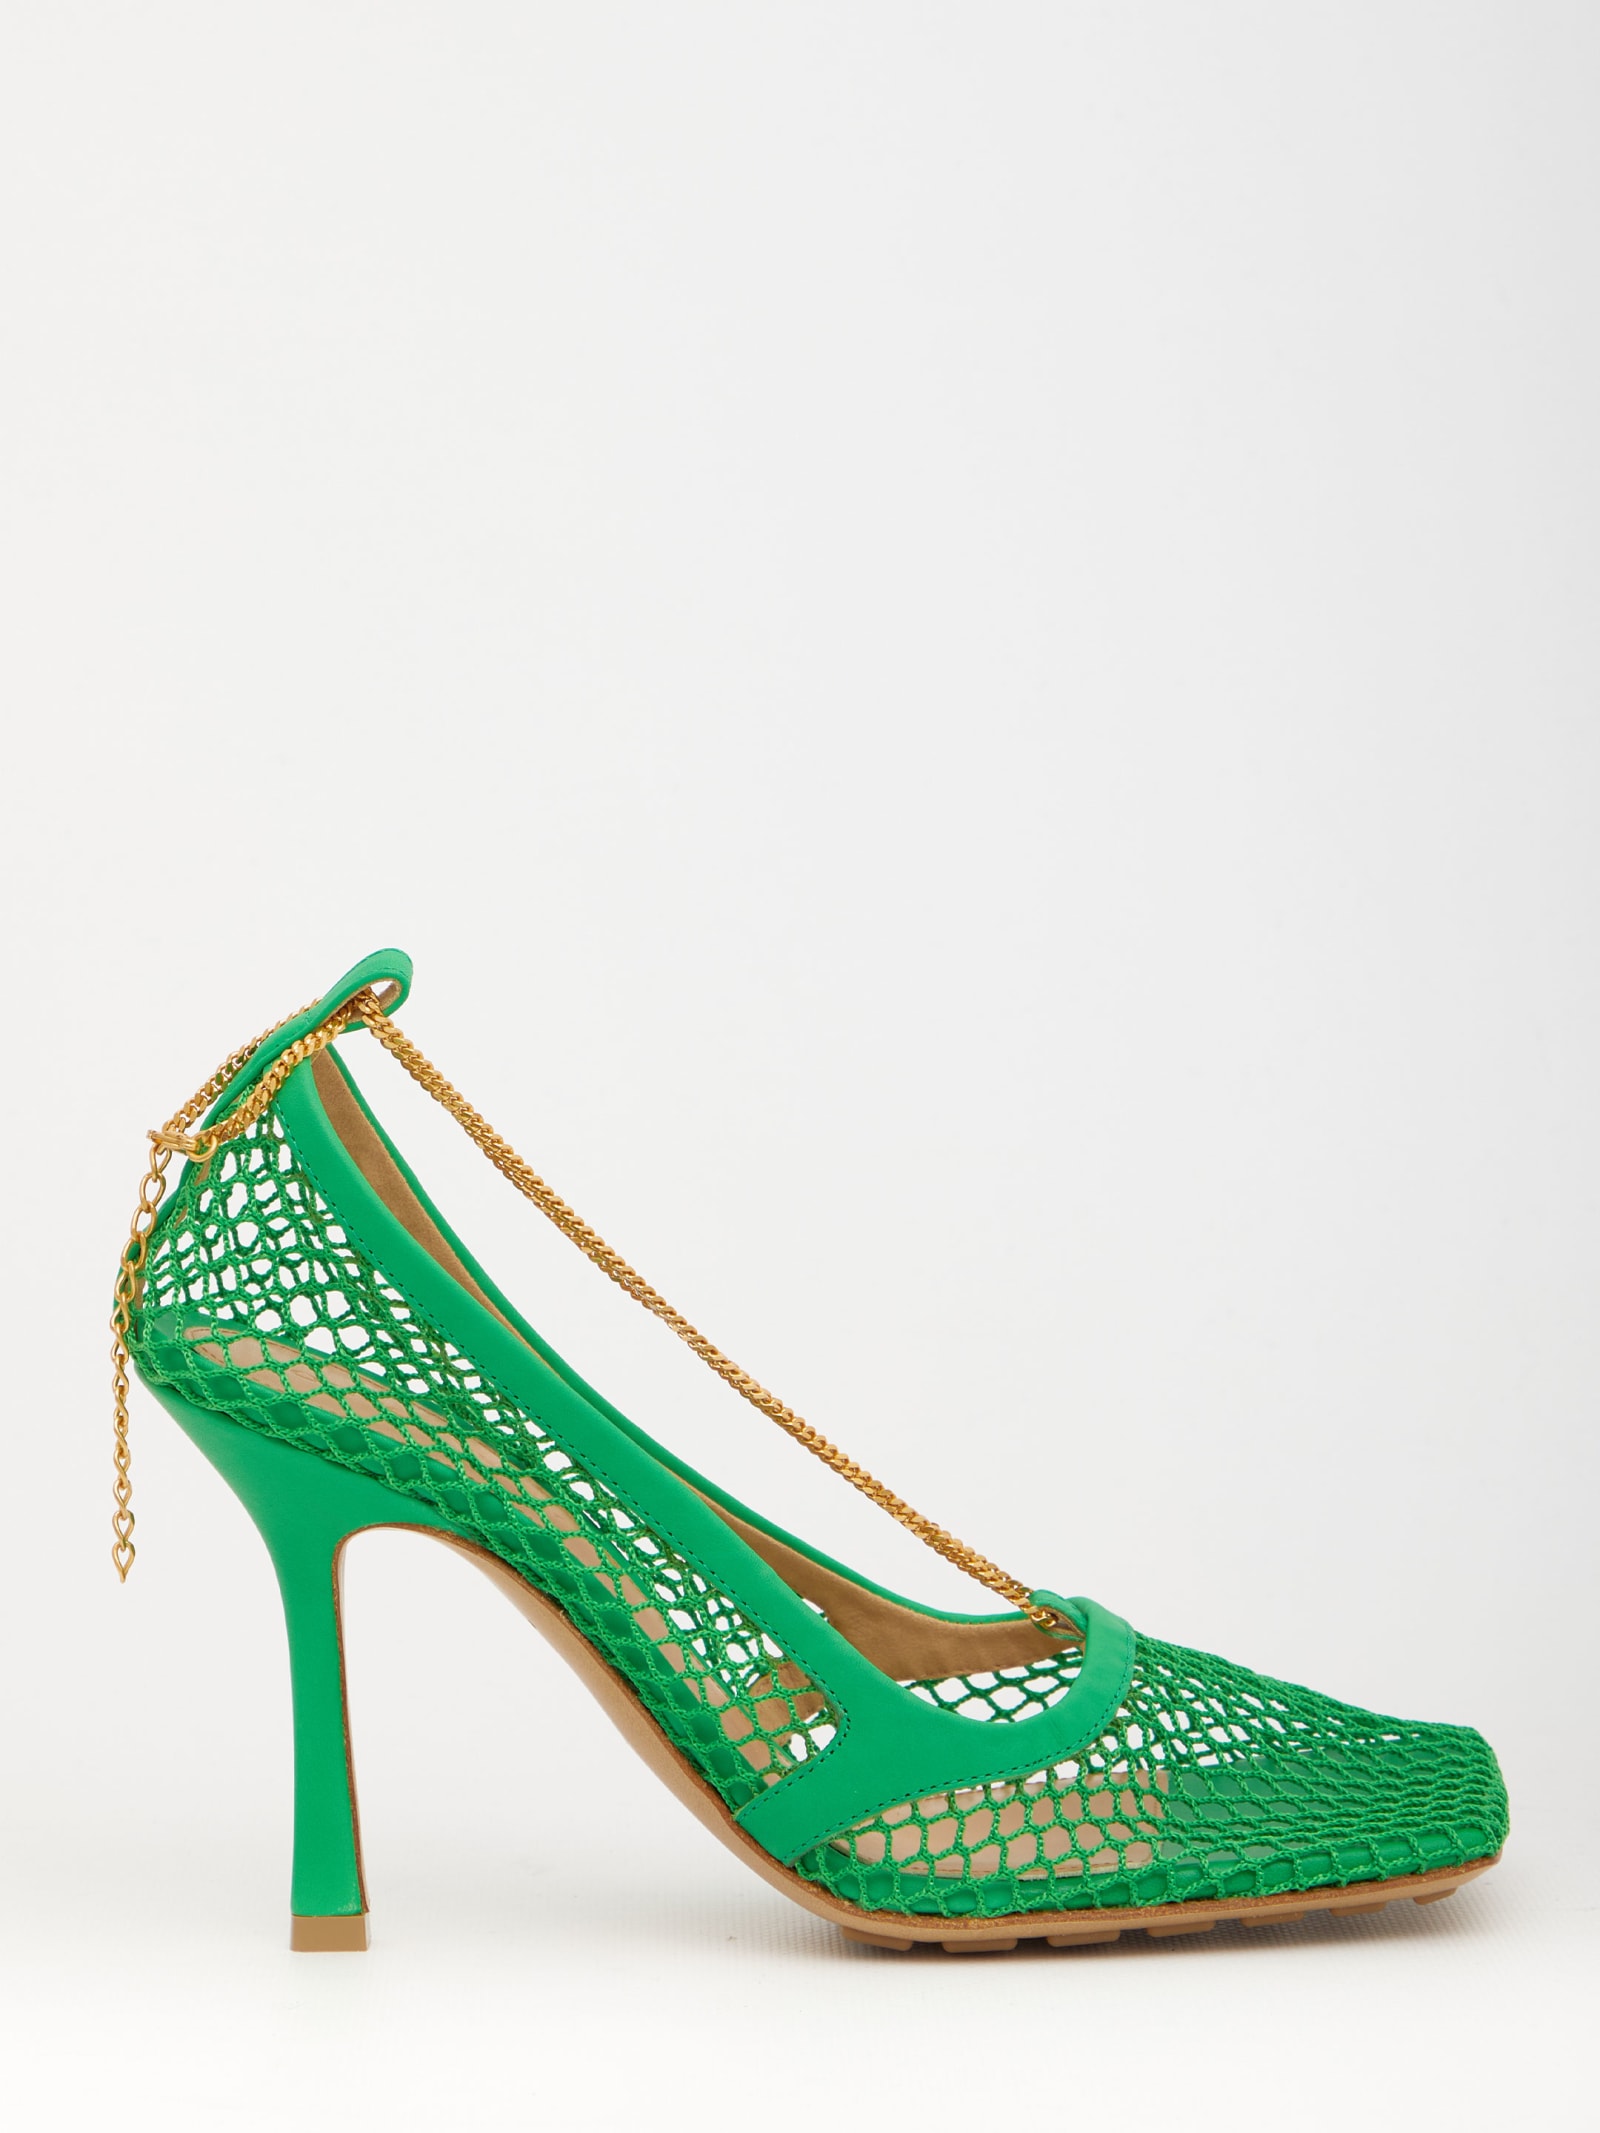 Bottega Veneta Green Stretch Sandals